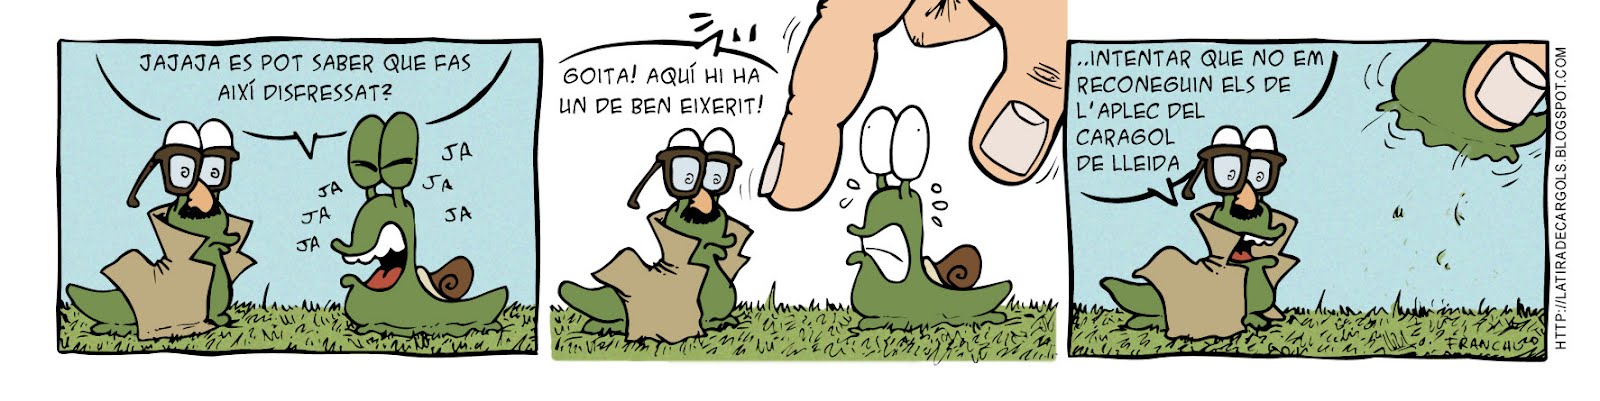 Tira comica 126 del webcomic Cargols del dibuixant Franchu